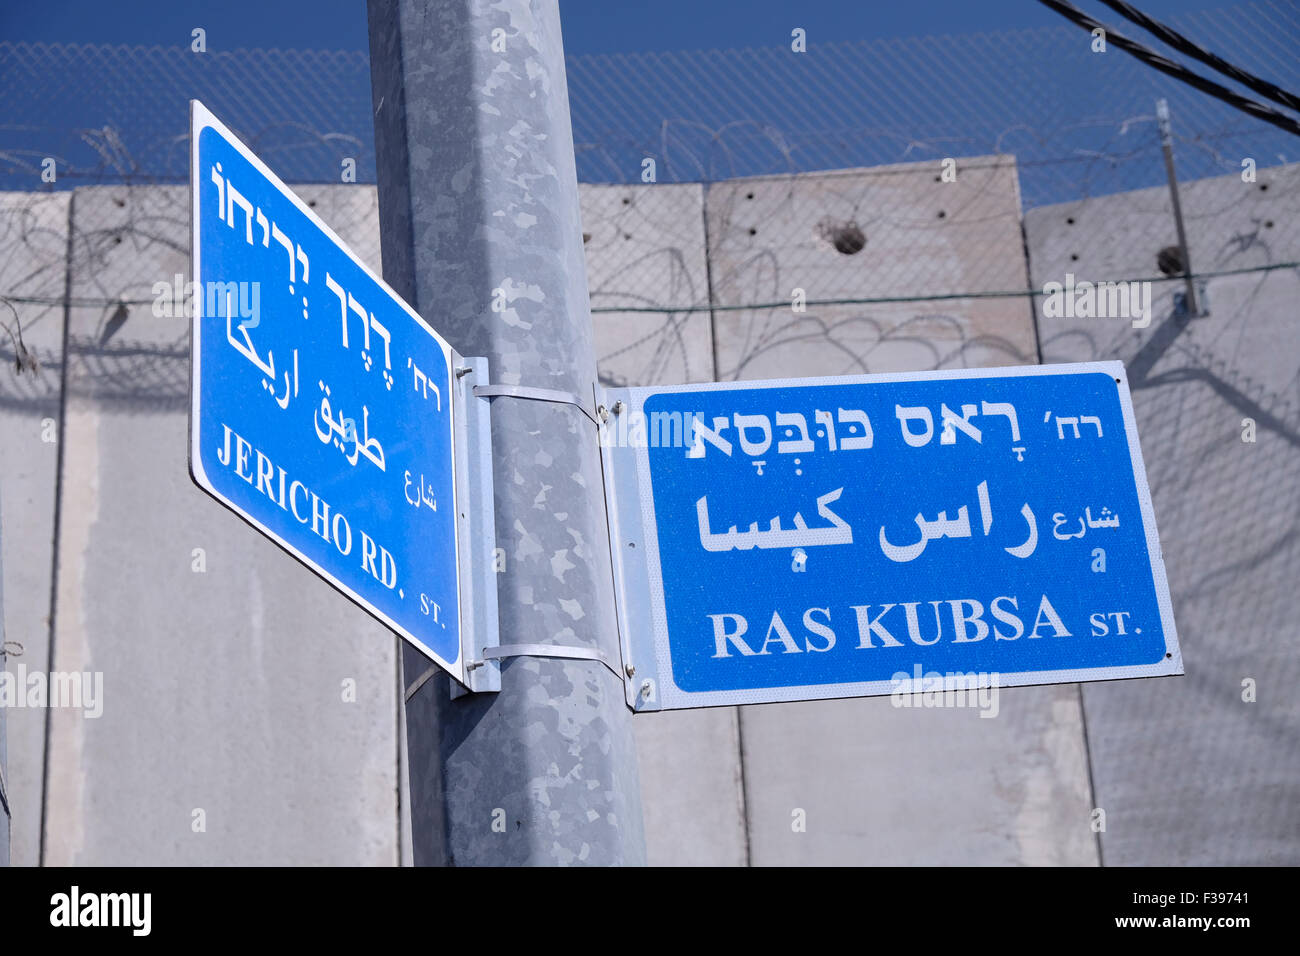 Panneaux de rue en hébreu, anglais et arabe, à côté du mur de séparation massif construit par Israël à Abu dis ou Abu Deis, une communauté palestinienne qui appartient au gouvernorat palestinien de Jérusalem au sud-est de Jérusalem en Israël Banque D'Images